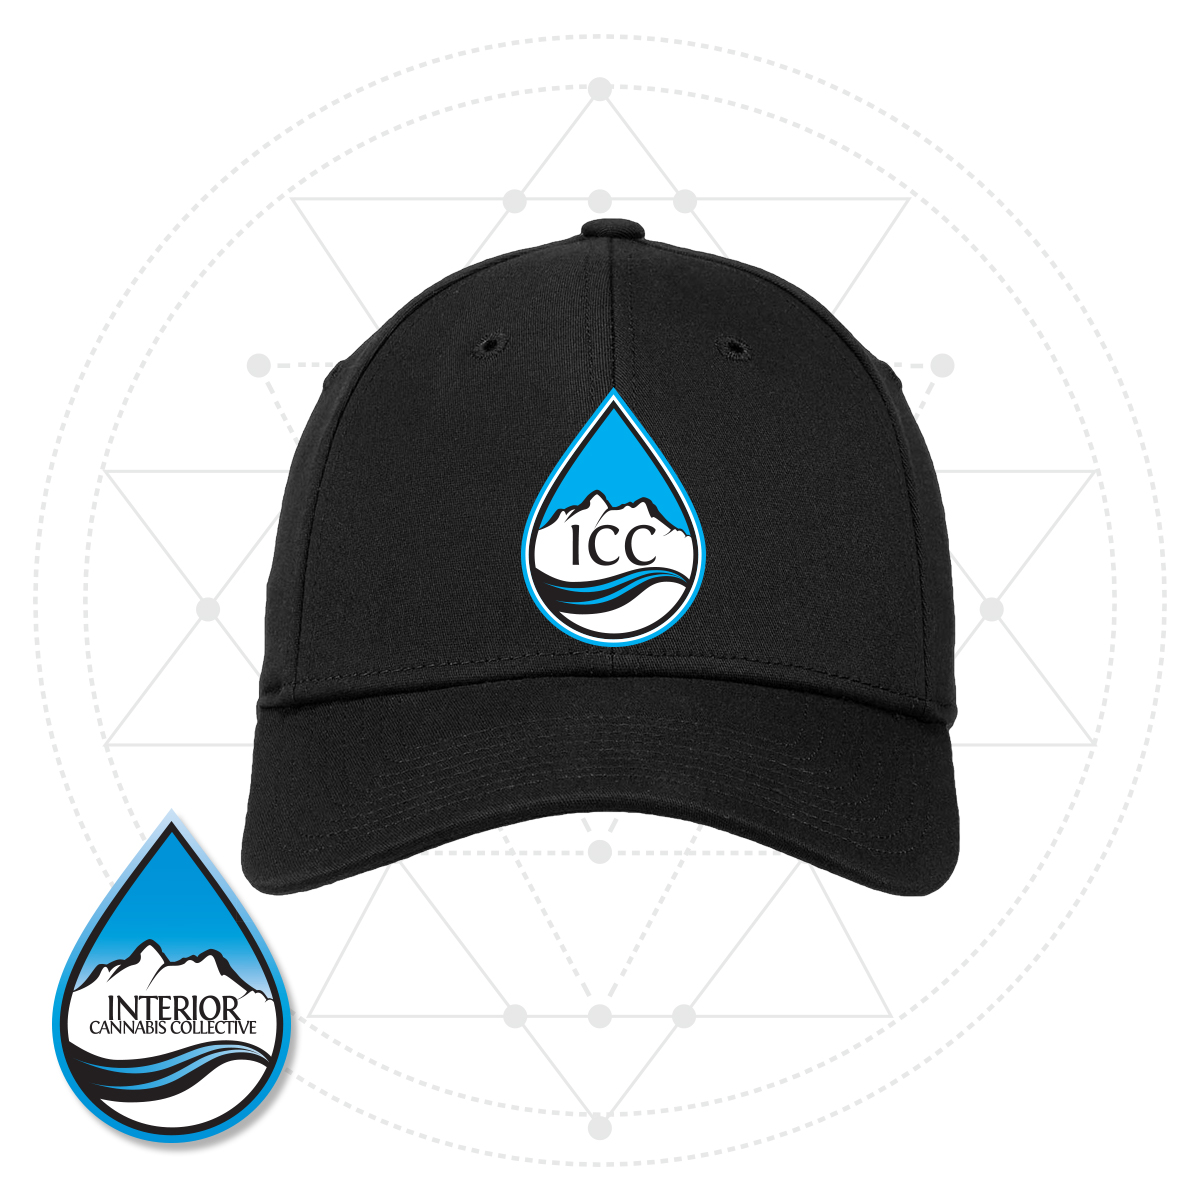 icc-logo-hat-1